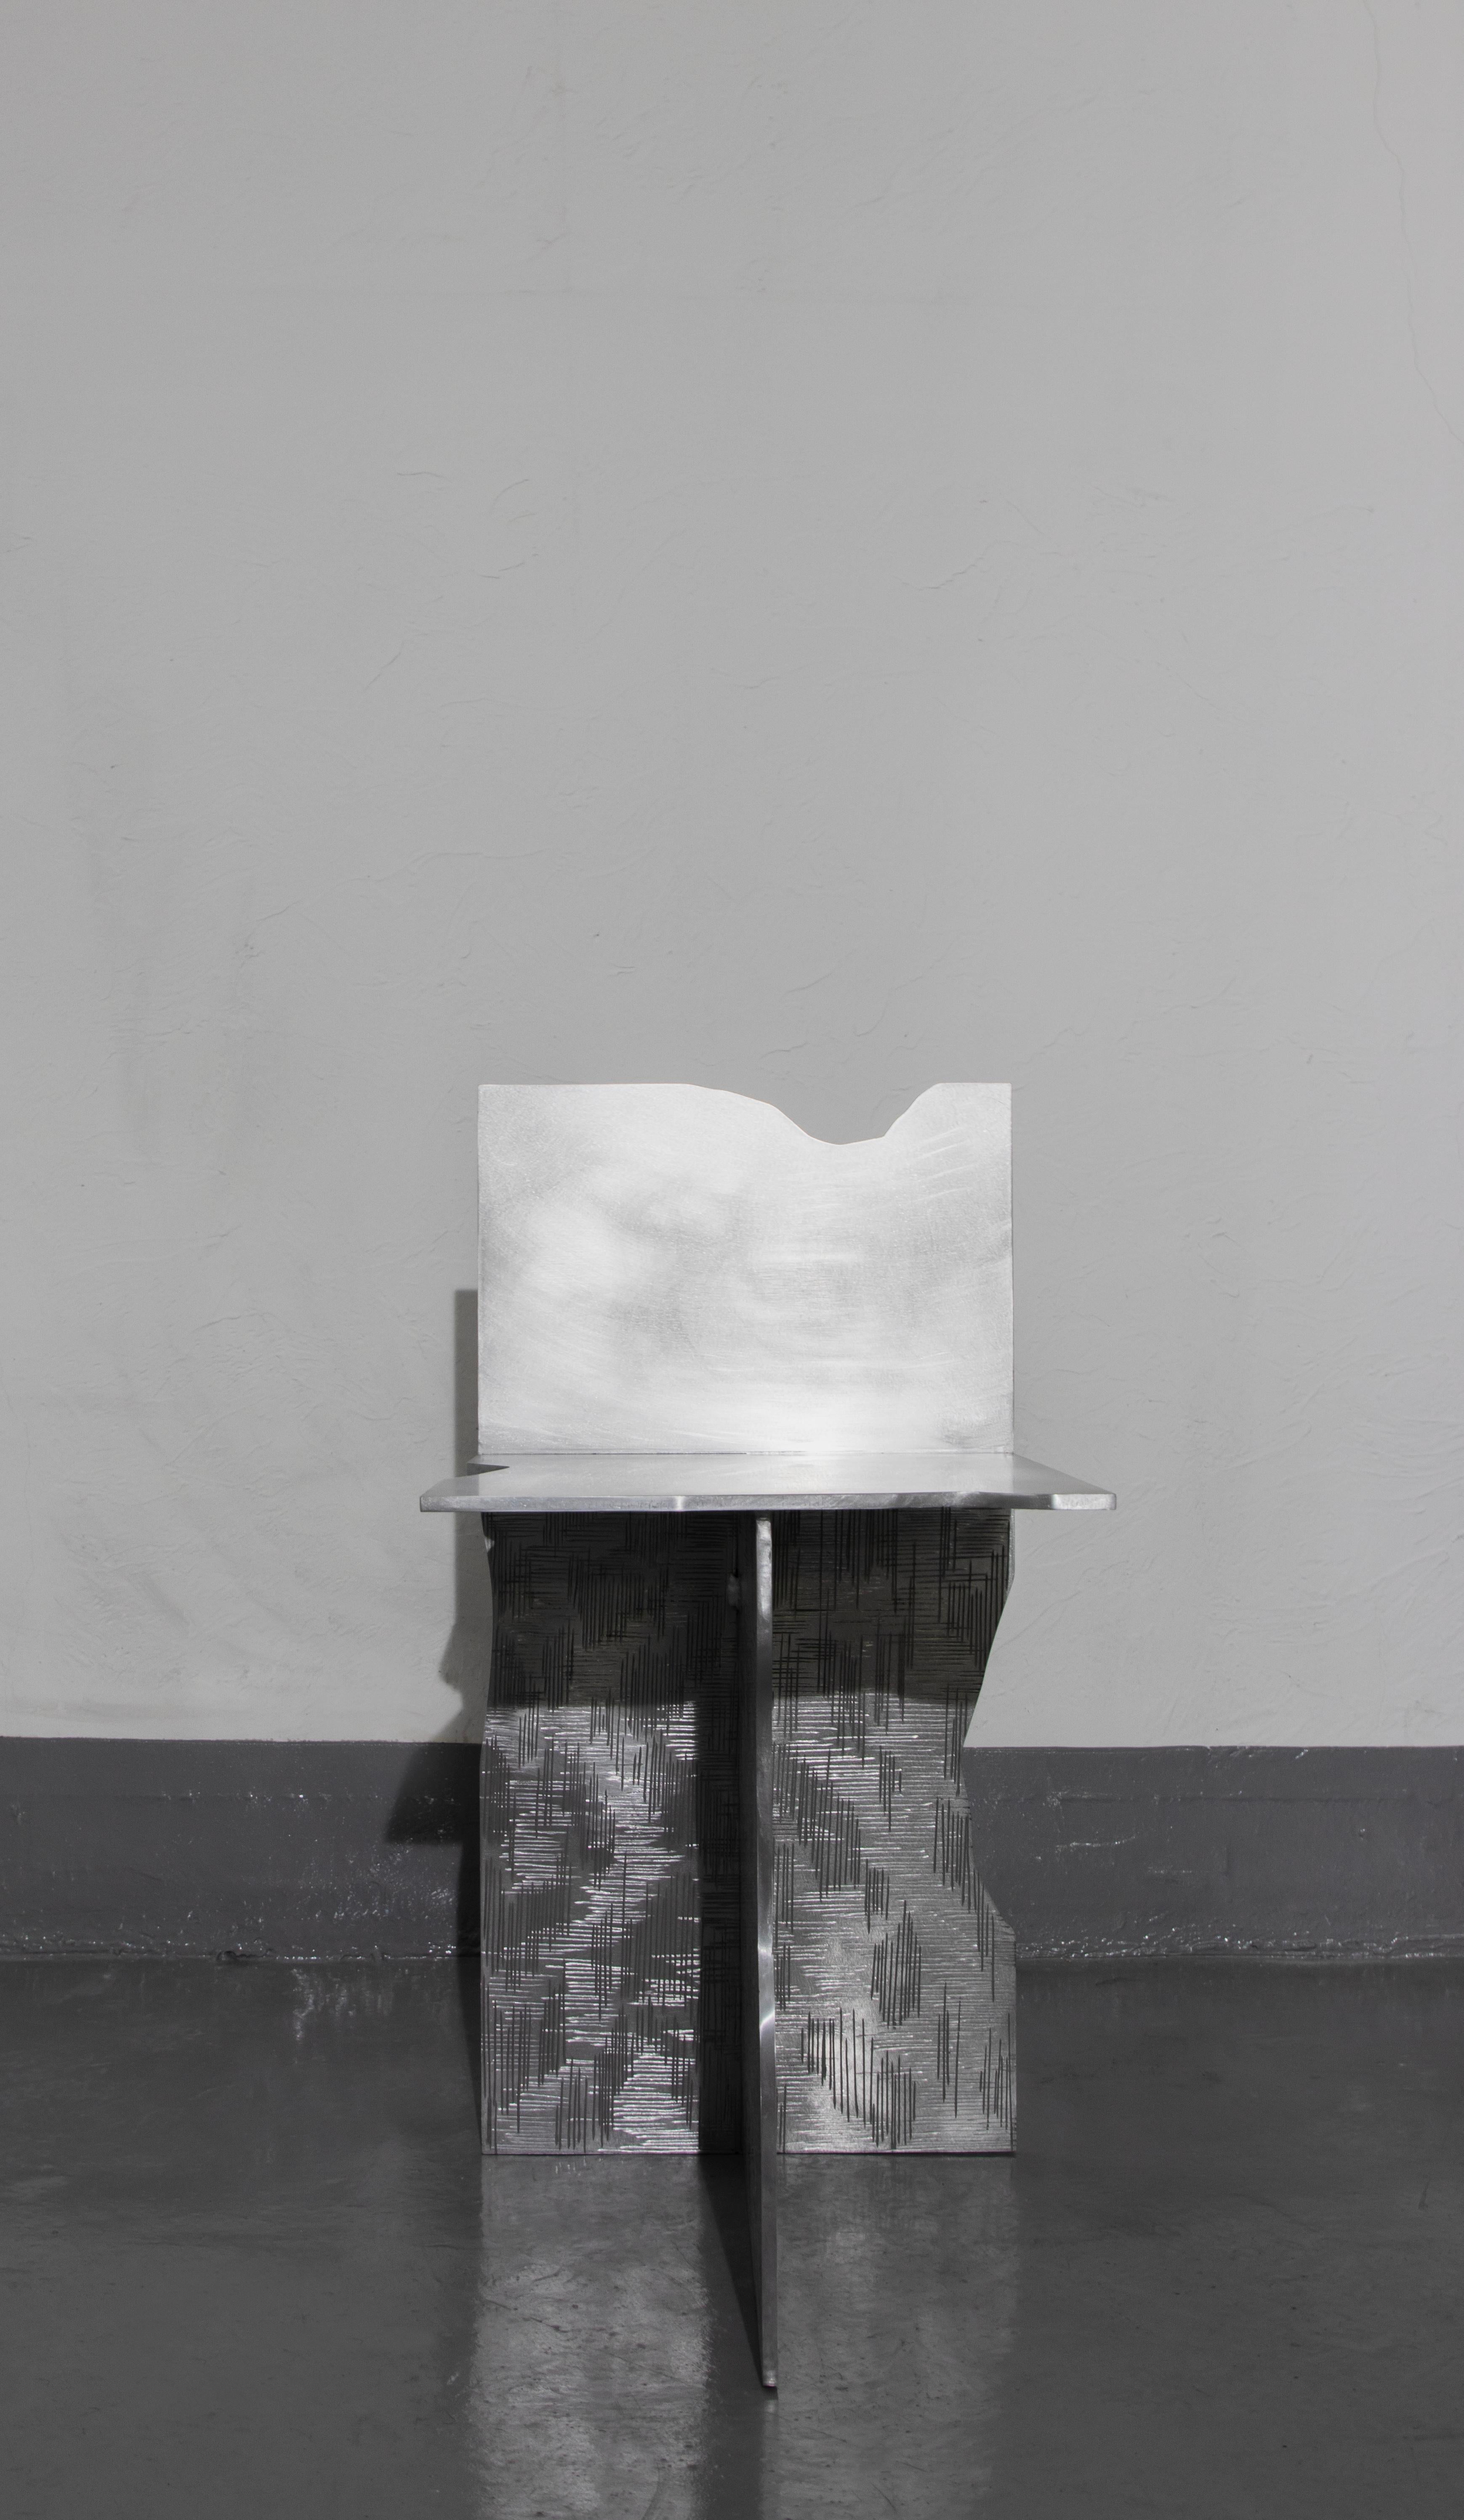 La chaise Cure 04 de Sundo Yoon.
Dimensions : D35 x L50 x H70 cm.
Matériaux : Aluminium.

Série Cure - Sundo Yoon
The Cure Series est une série d'œuvres du designer Sundo Yoon, basé en Corée.
 Dans la série Cure, on a l'impression que le